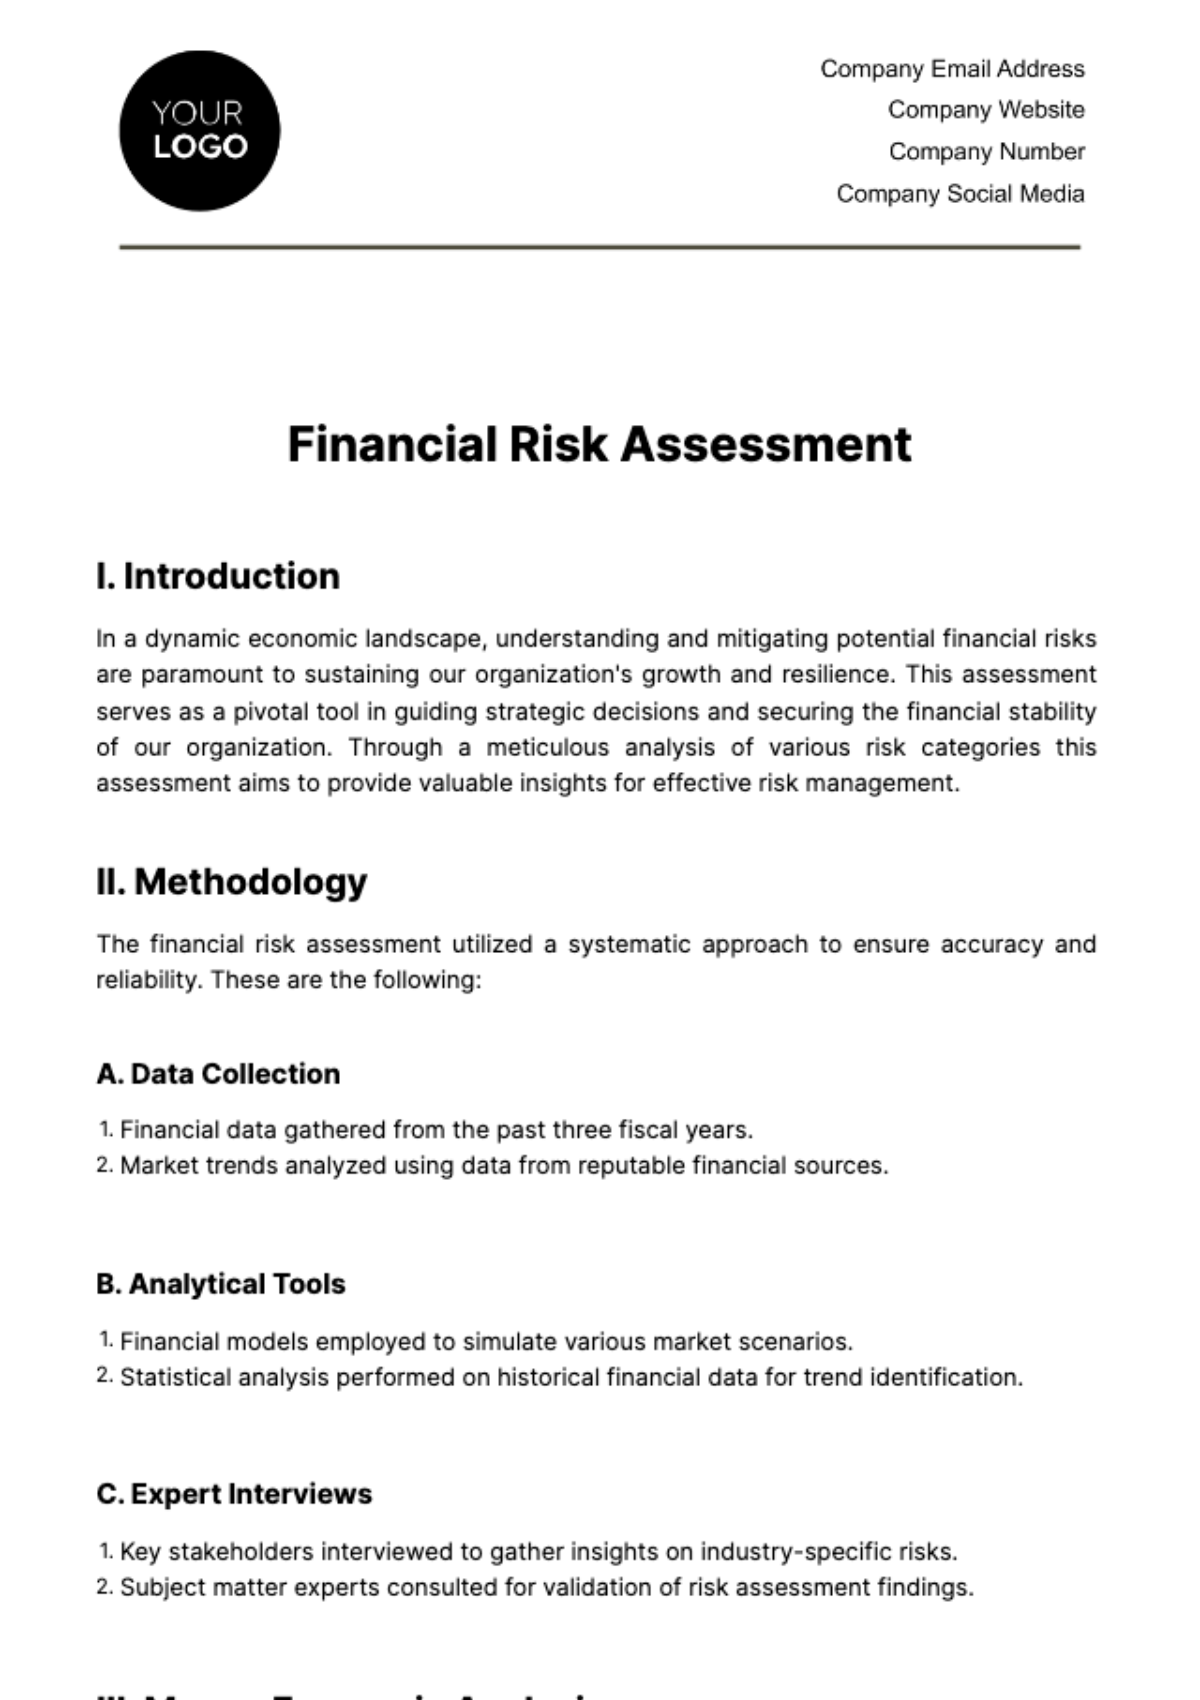 Financial Risk Assessment Template